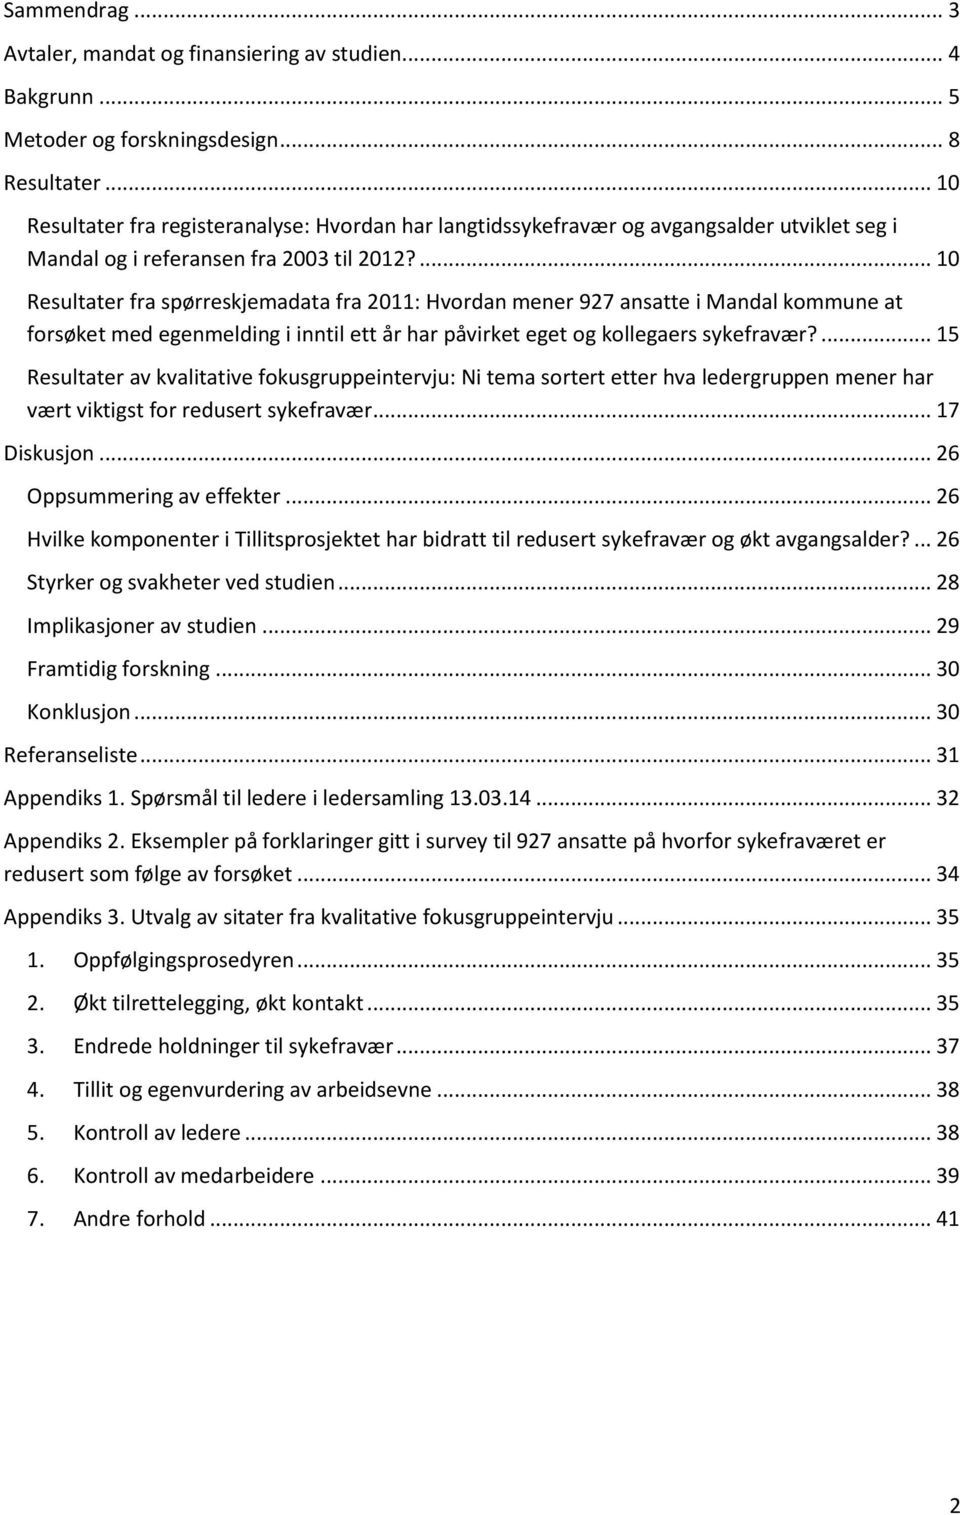 ... 10 Resultater fra spørreskjemadata fra 2011: Hvordan mener 927 ansatte i Mandal kommune at forsøket med egenmelding i inntil ett år har påvirket eget og kollegaers sykefravær?